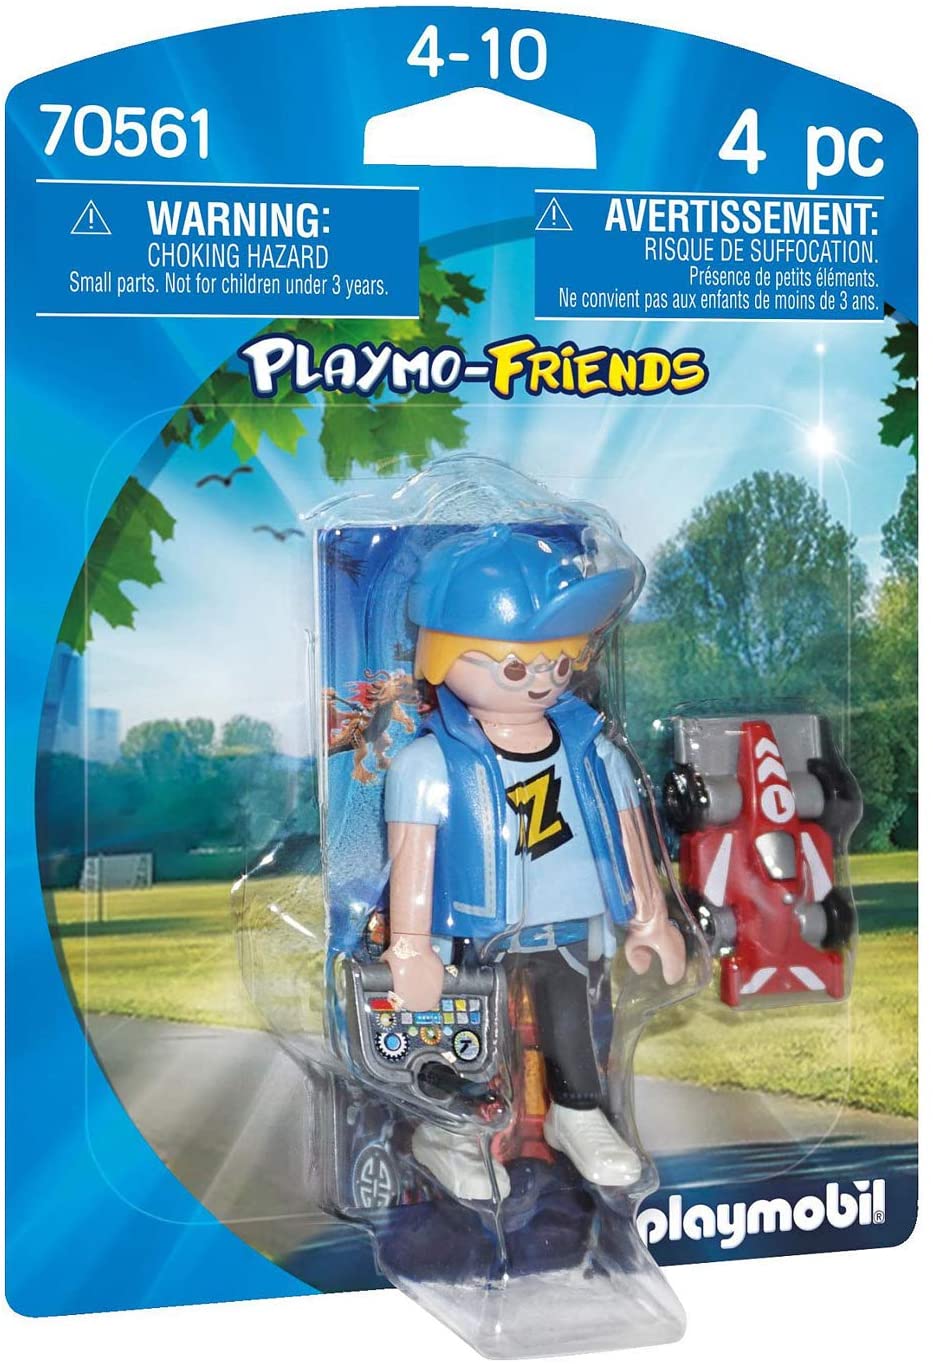 Playmobil 70561 Playmo Friends Boy con coche Rc para niños a partir de 4 años